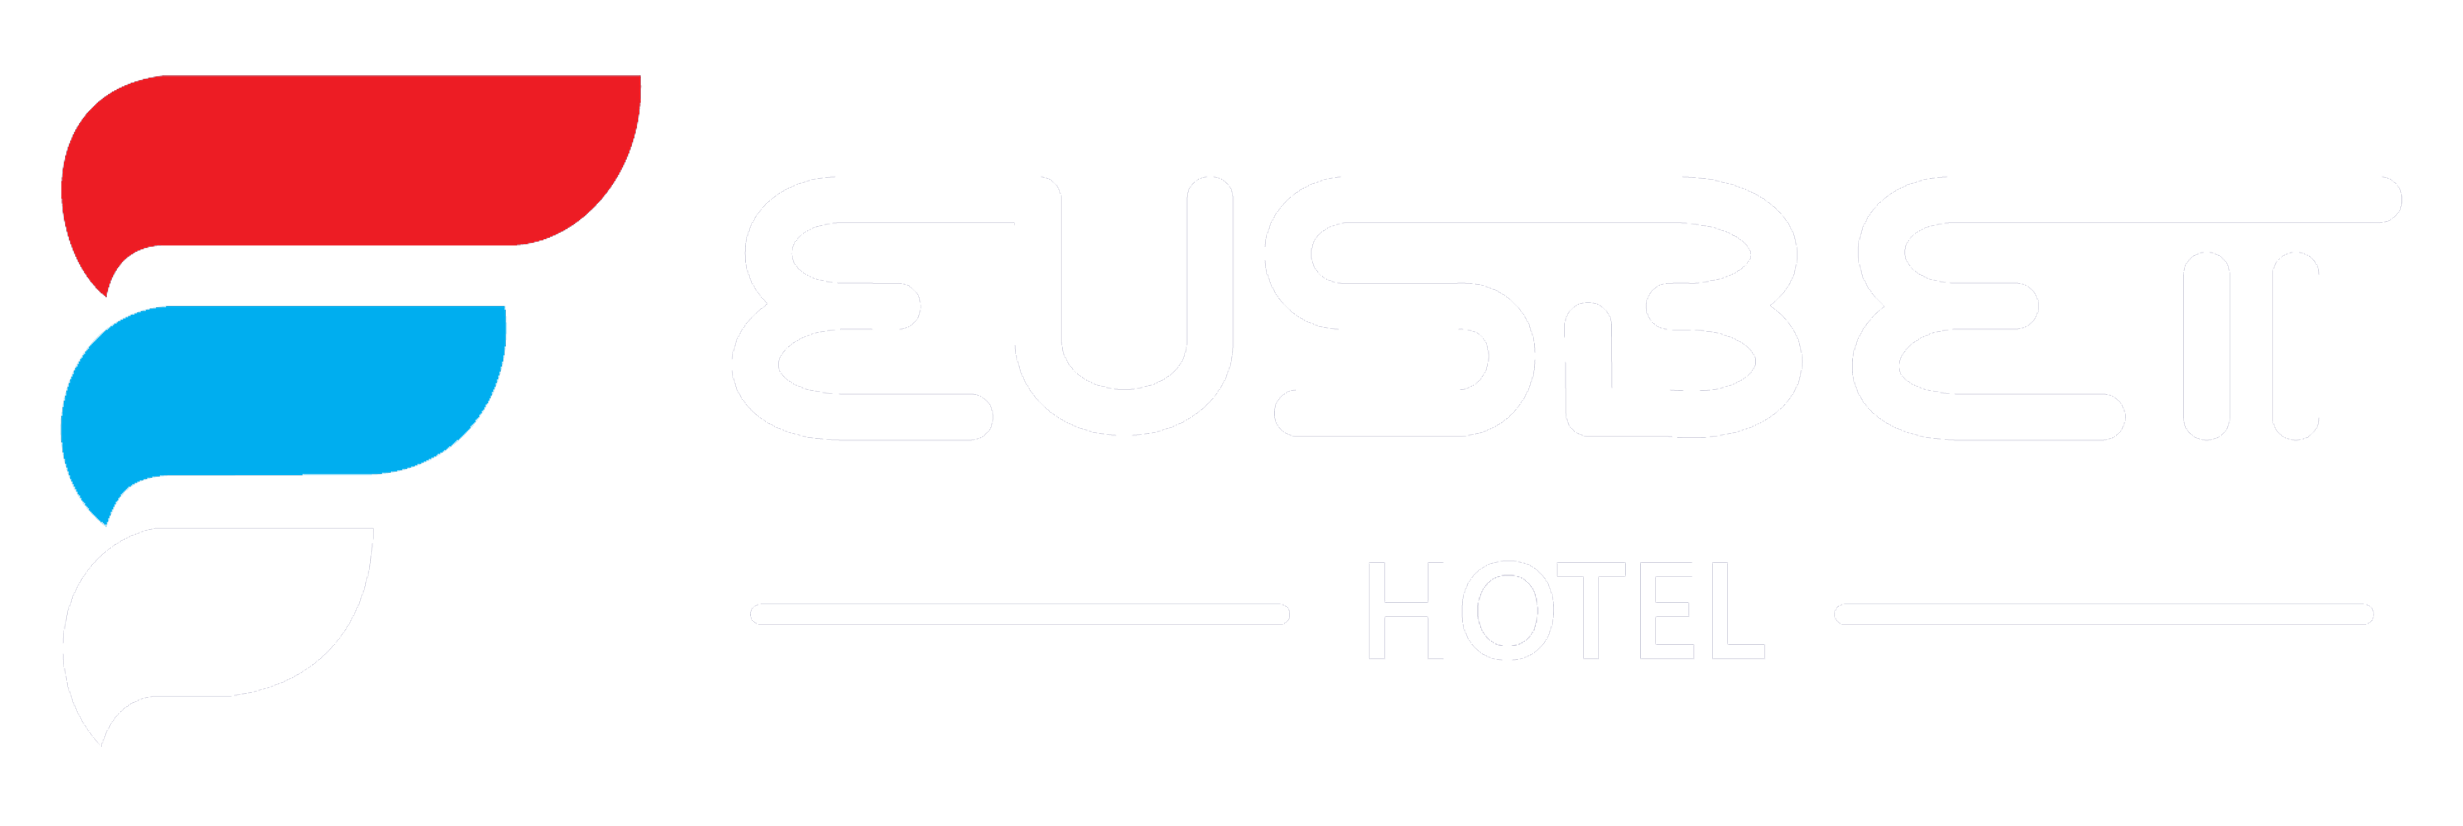 Eusbett Hotel Limited